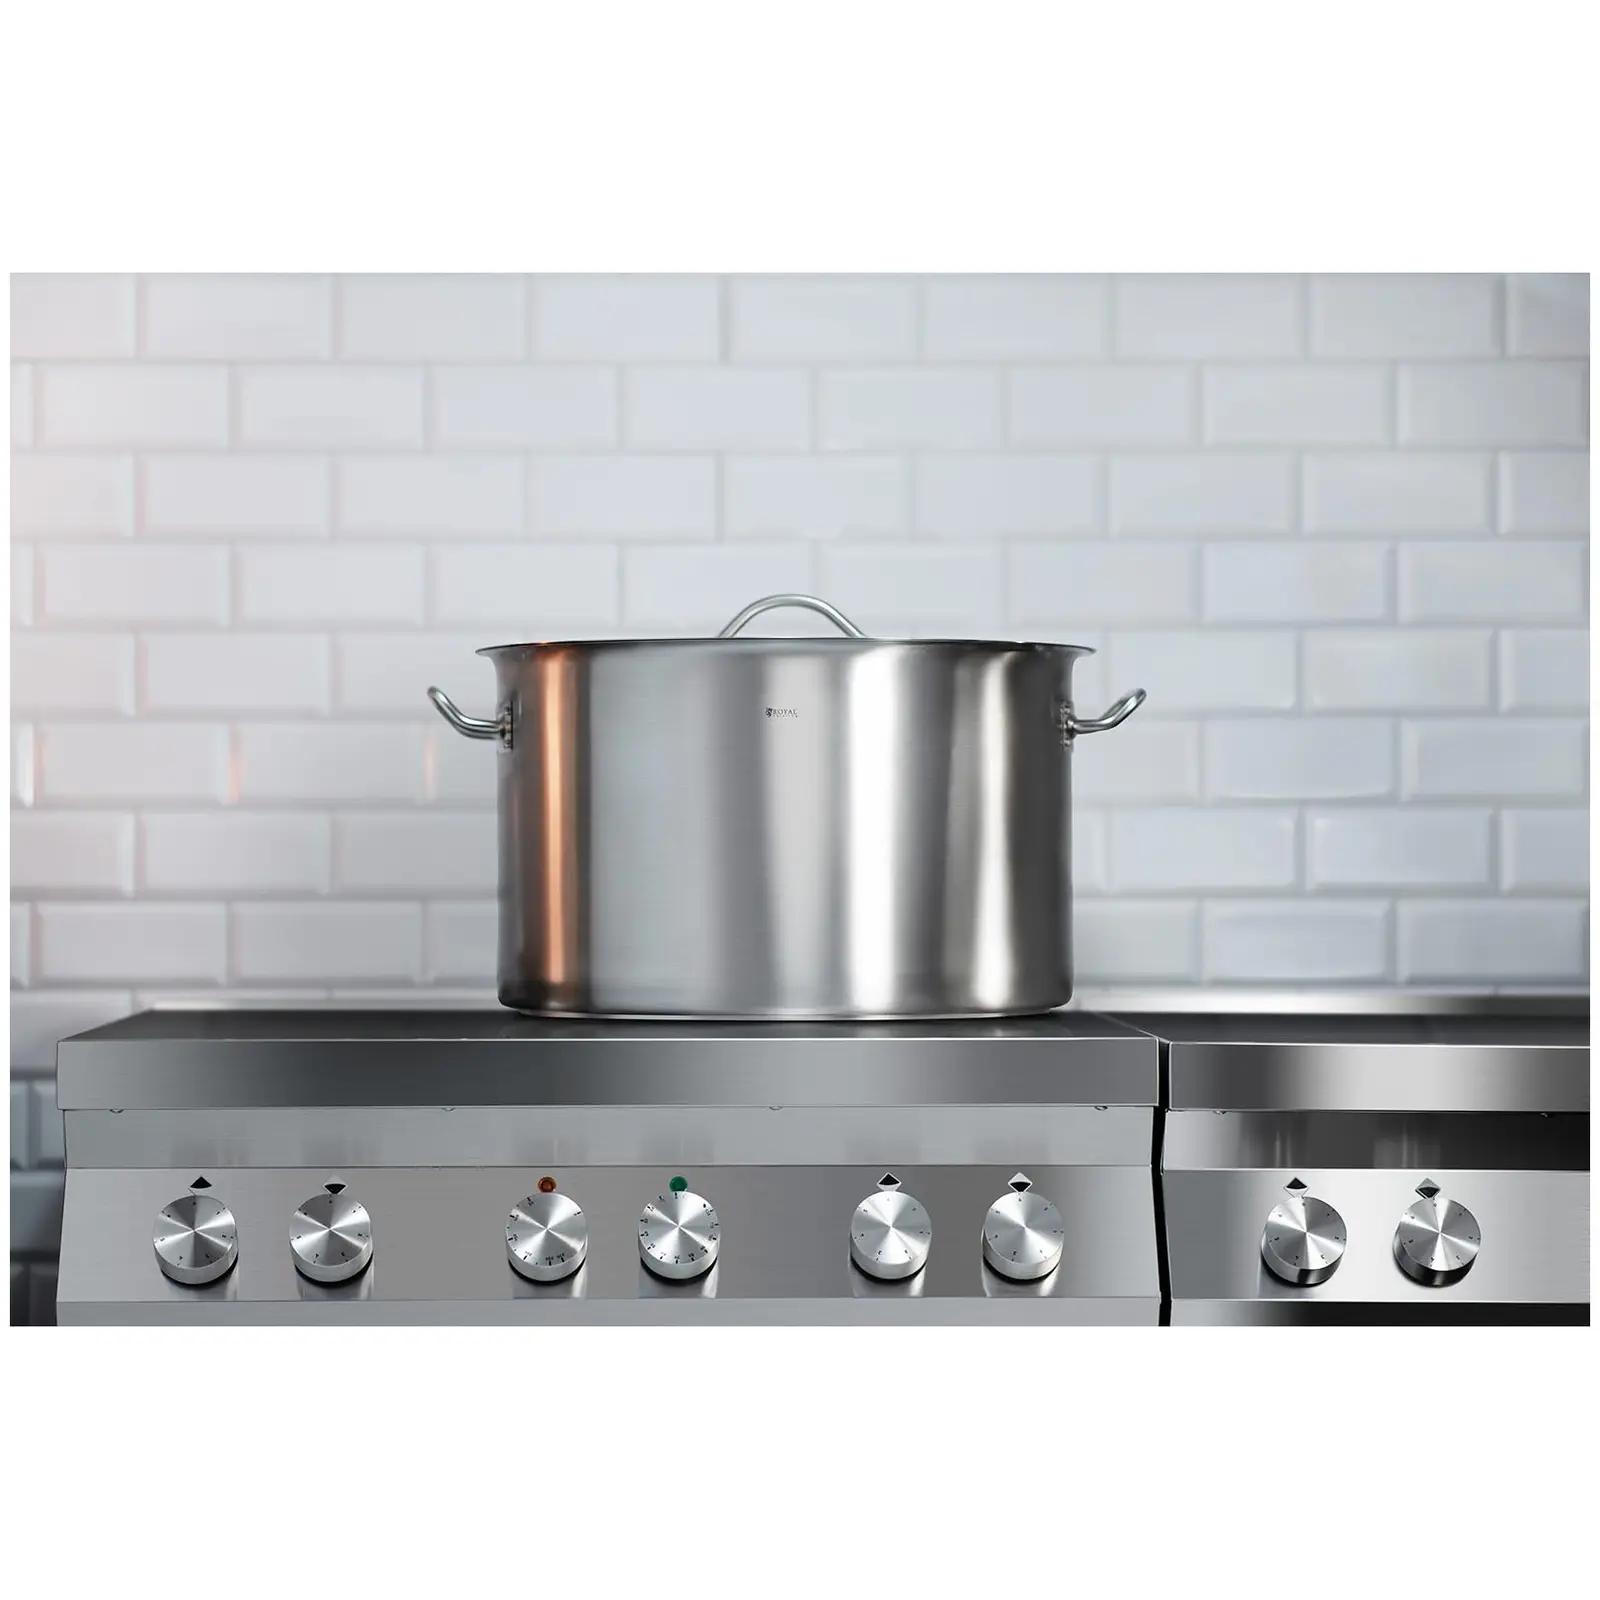 Les tables de cuisson à induction : quelles casseroles sont appropriées?